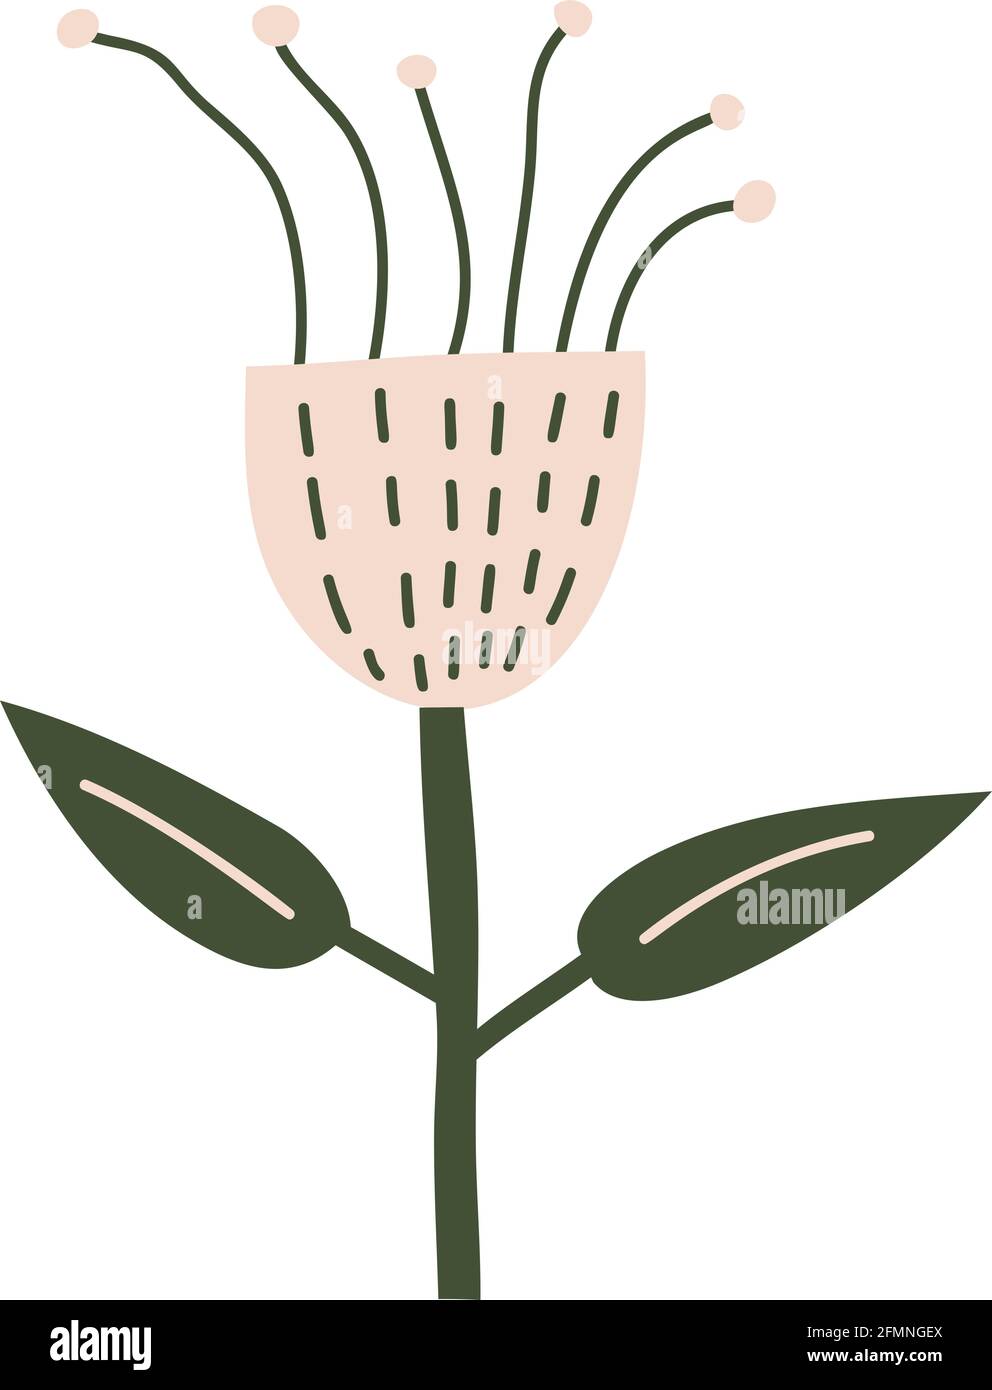 Fleur de printemps stylisée vectorielle. Élément d'illustration scandinave. Image florale d'été décorative pour carte de Saint-Valentin ou affiche de voeux, vacances Illustration de Vecteur